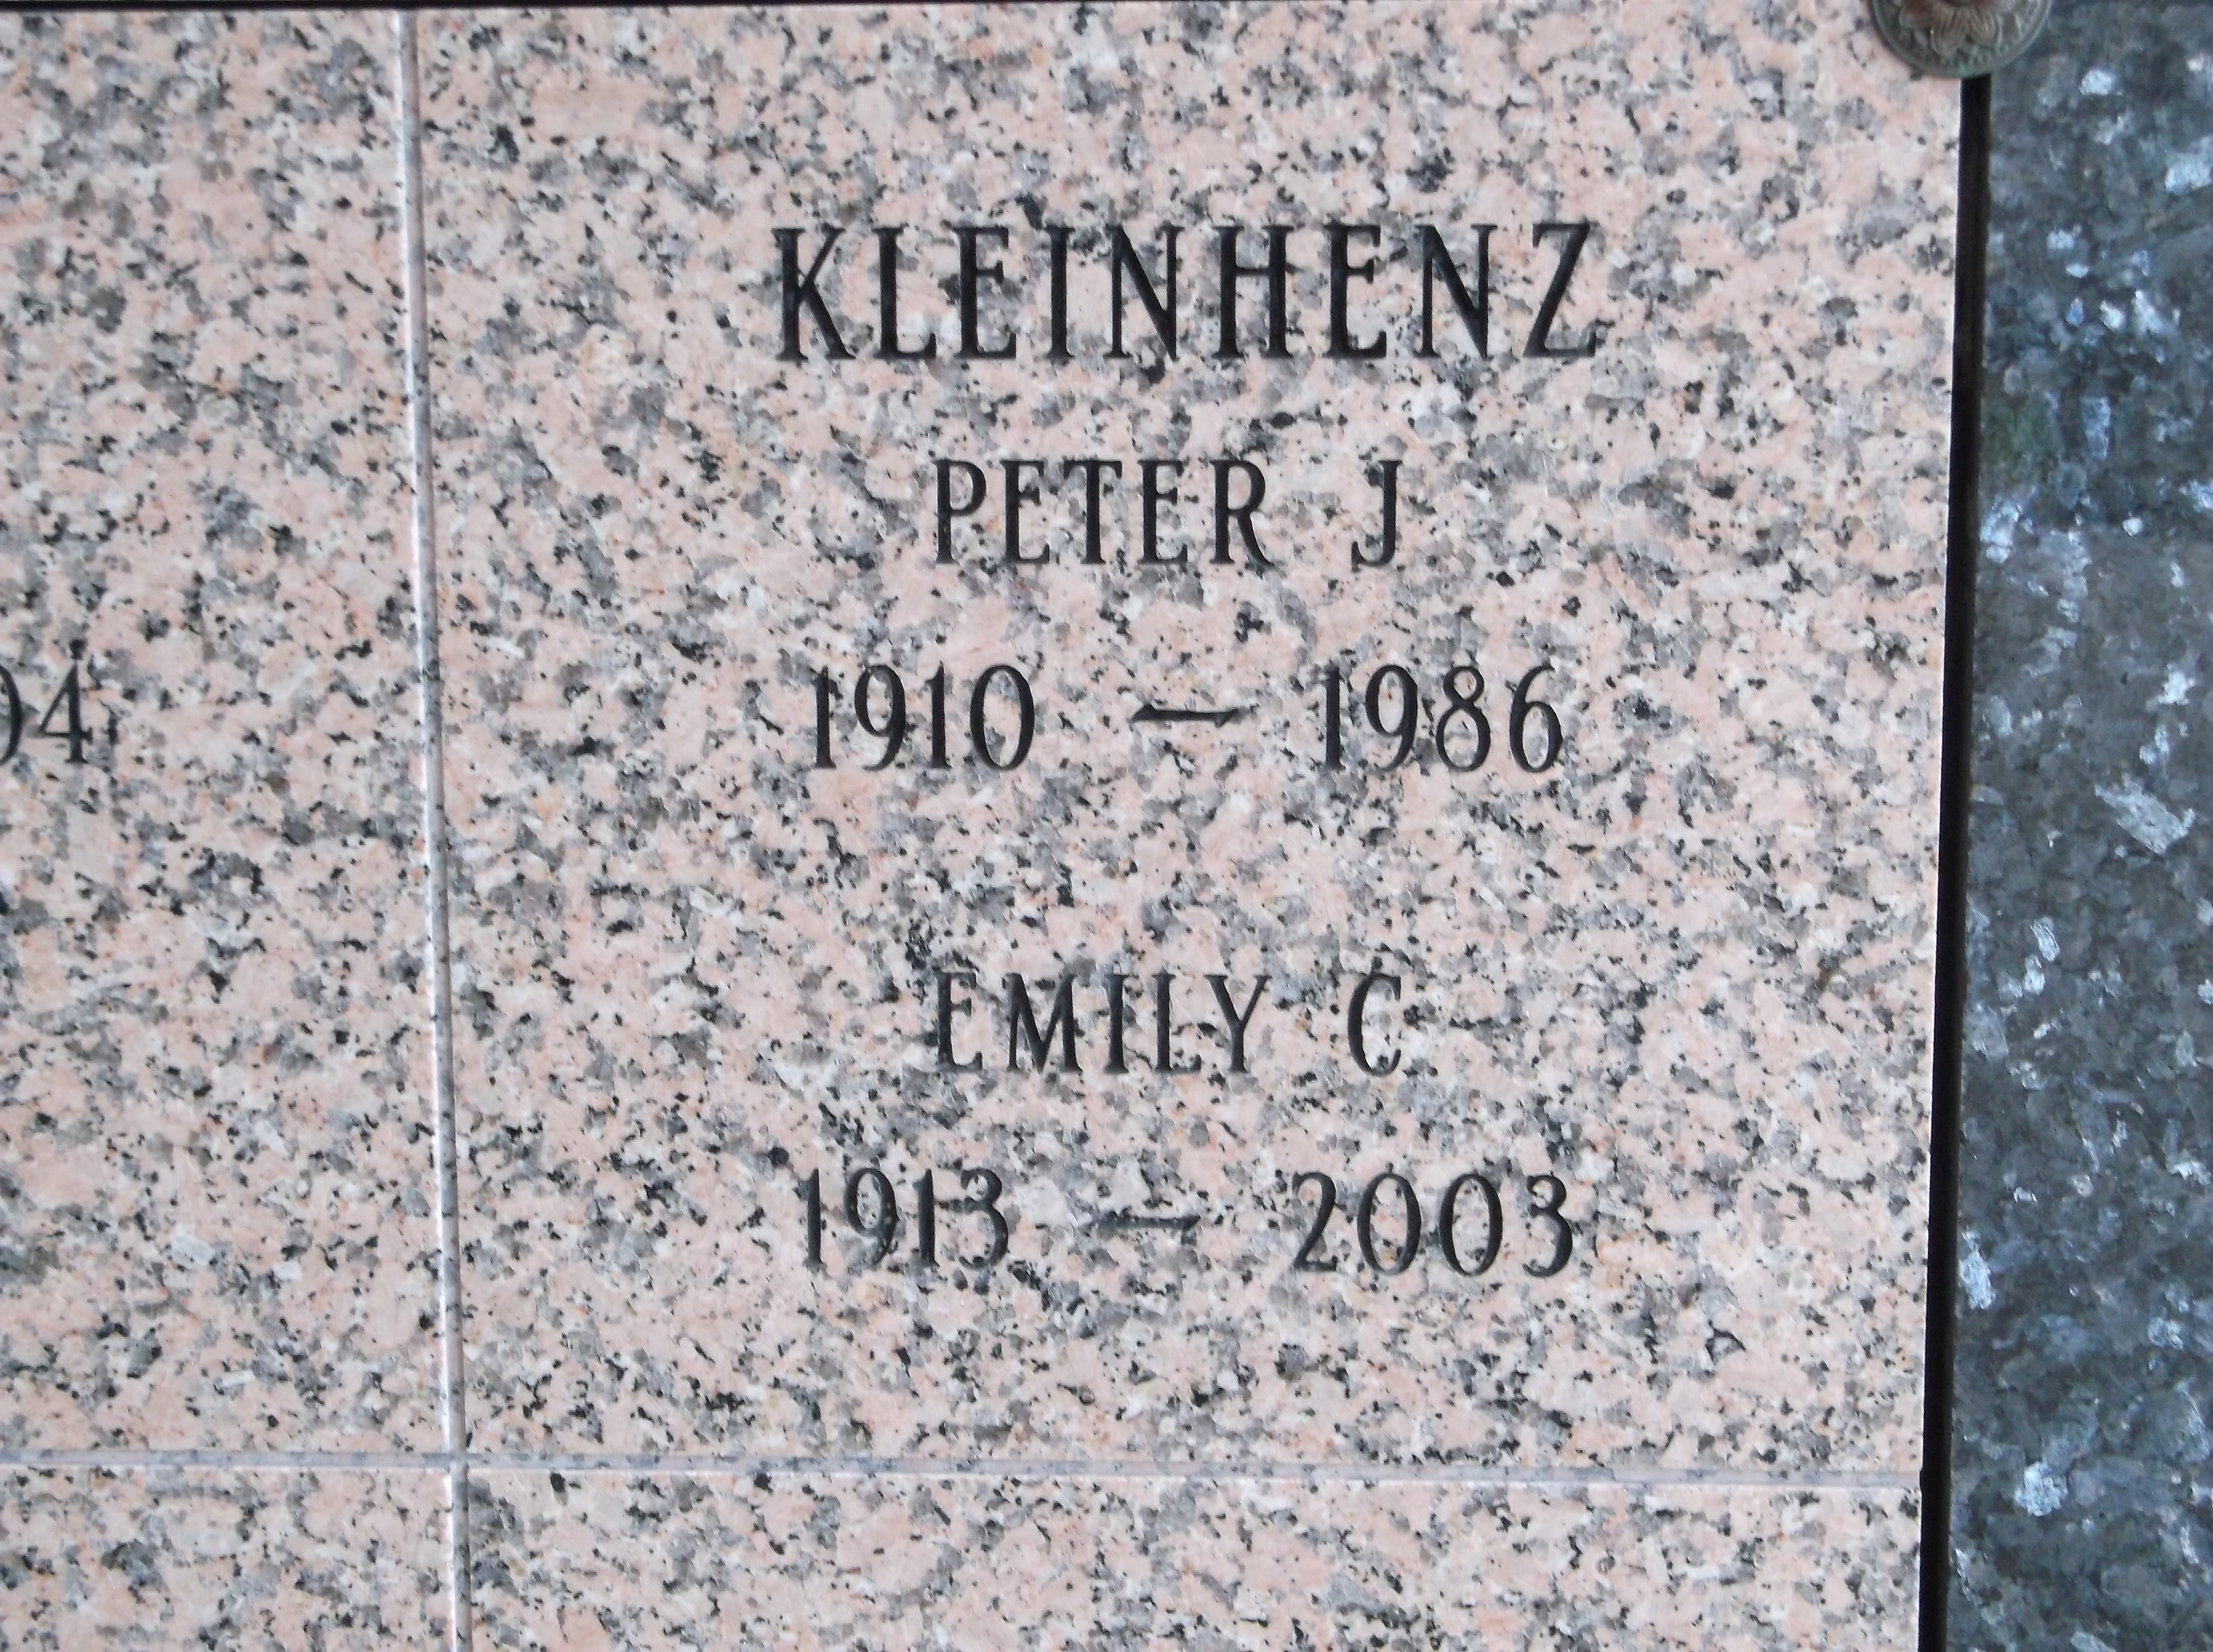 Peter J Kleinhenz